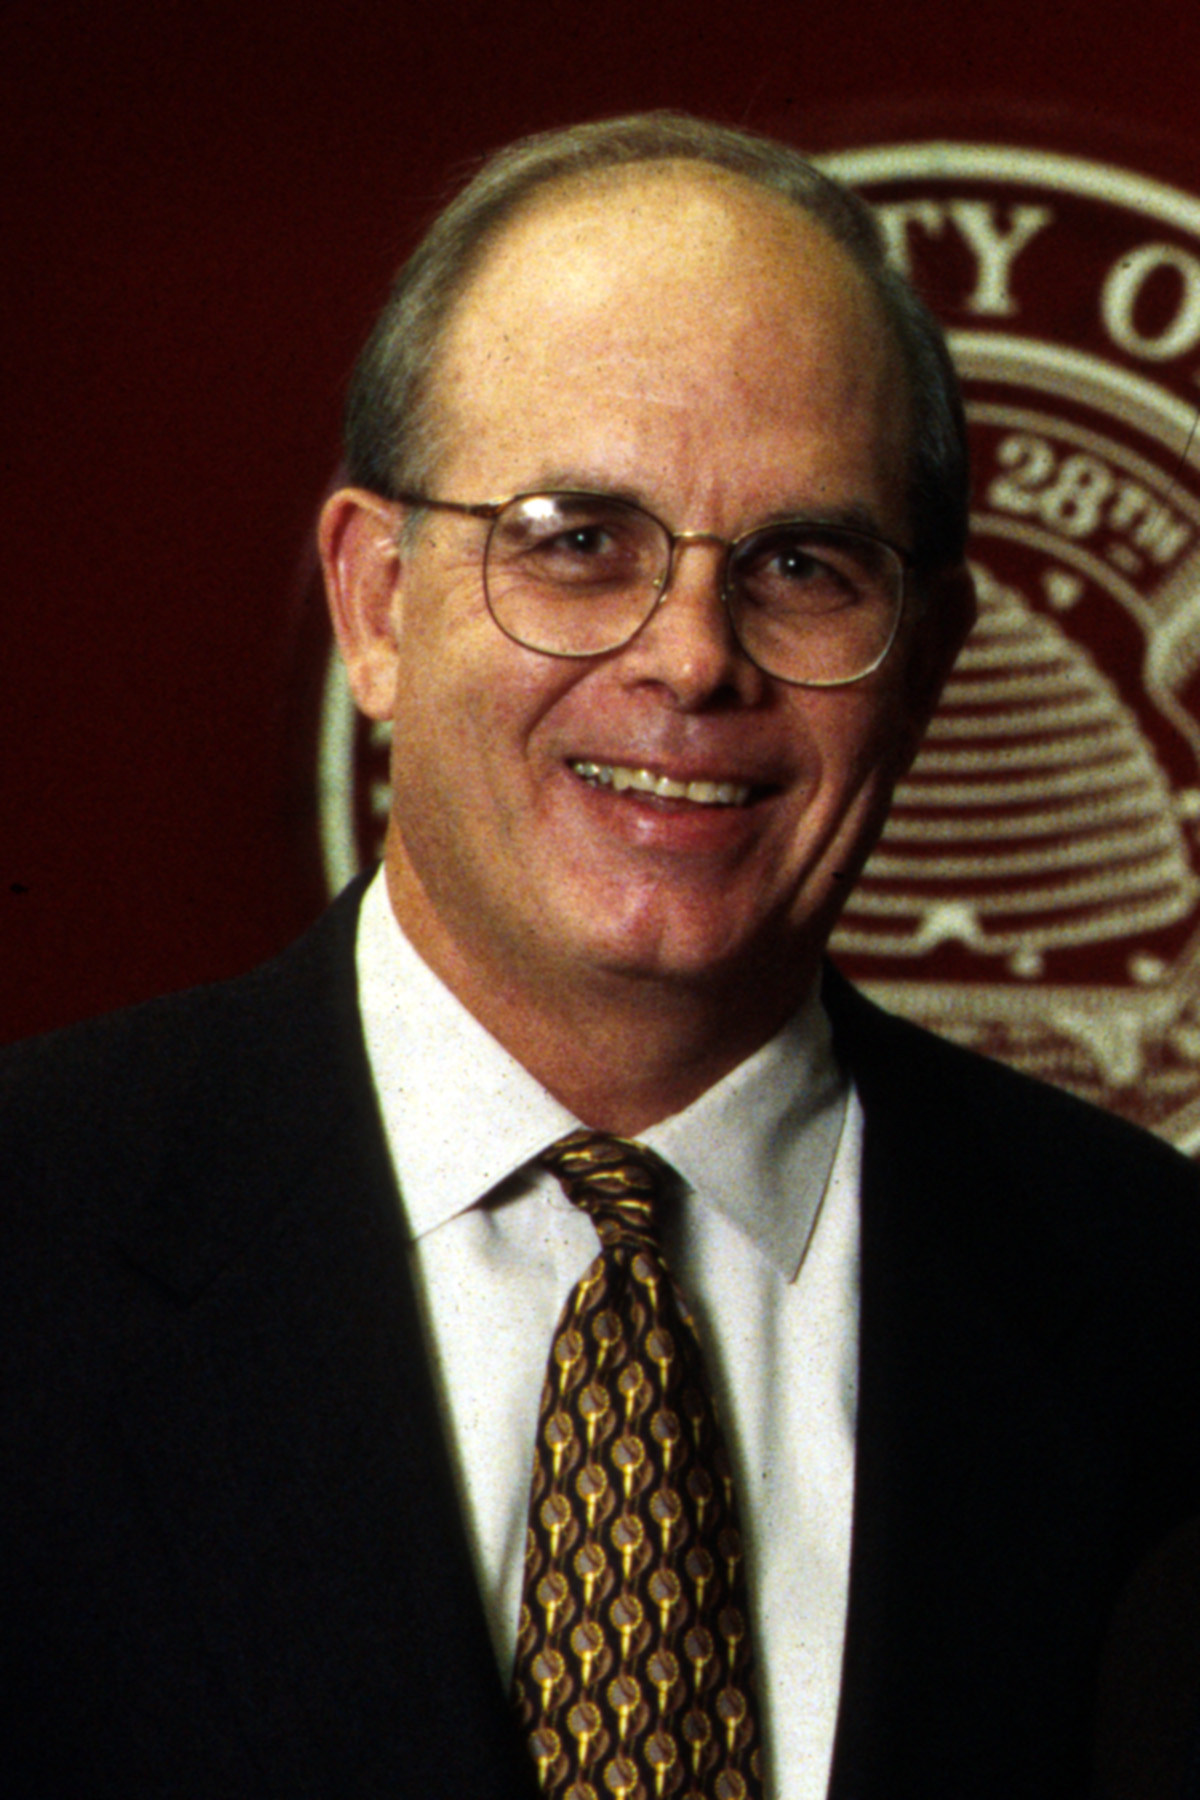 University of Utah President, J. Bernard Machen